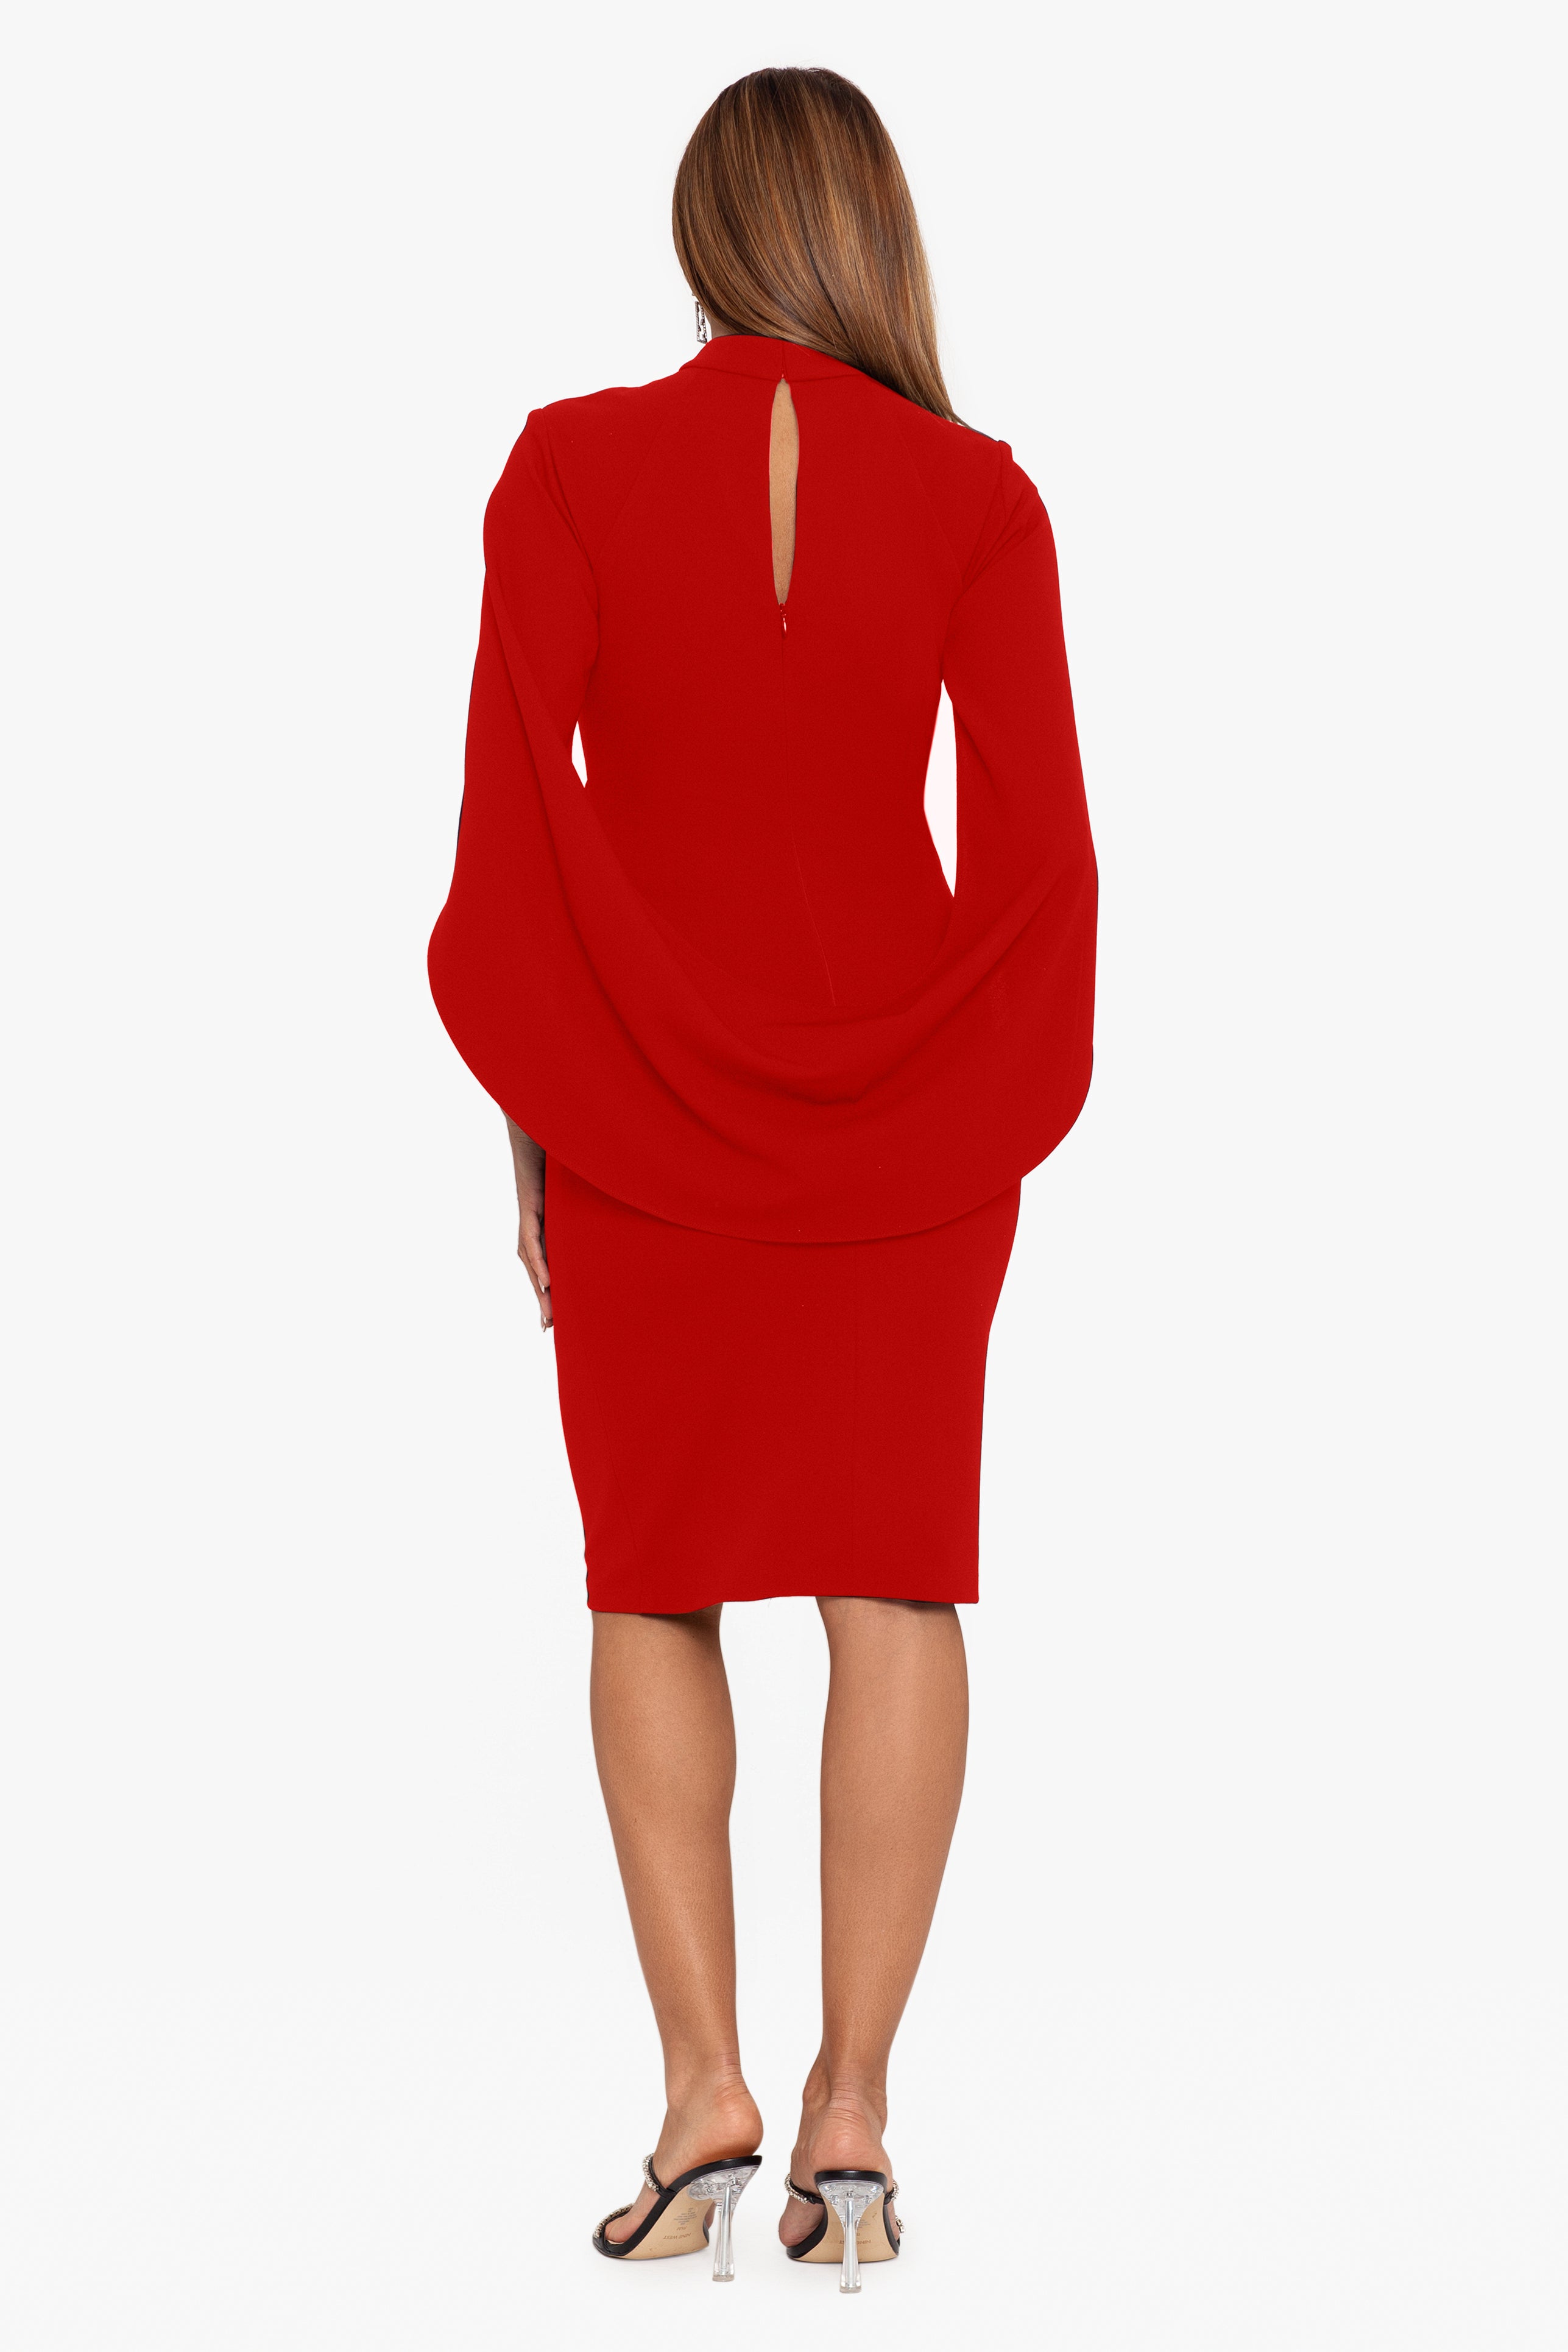 Get All Over Printed Cold Shoulder Dress at ₹ 1304 | LBB Shop